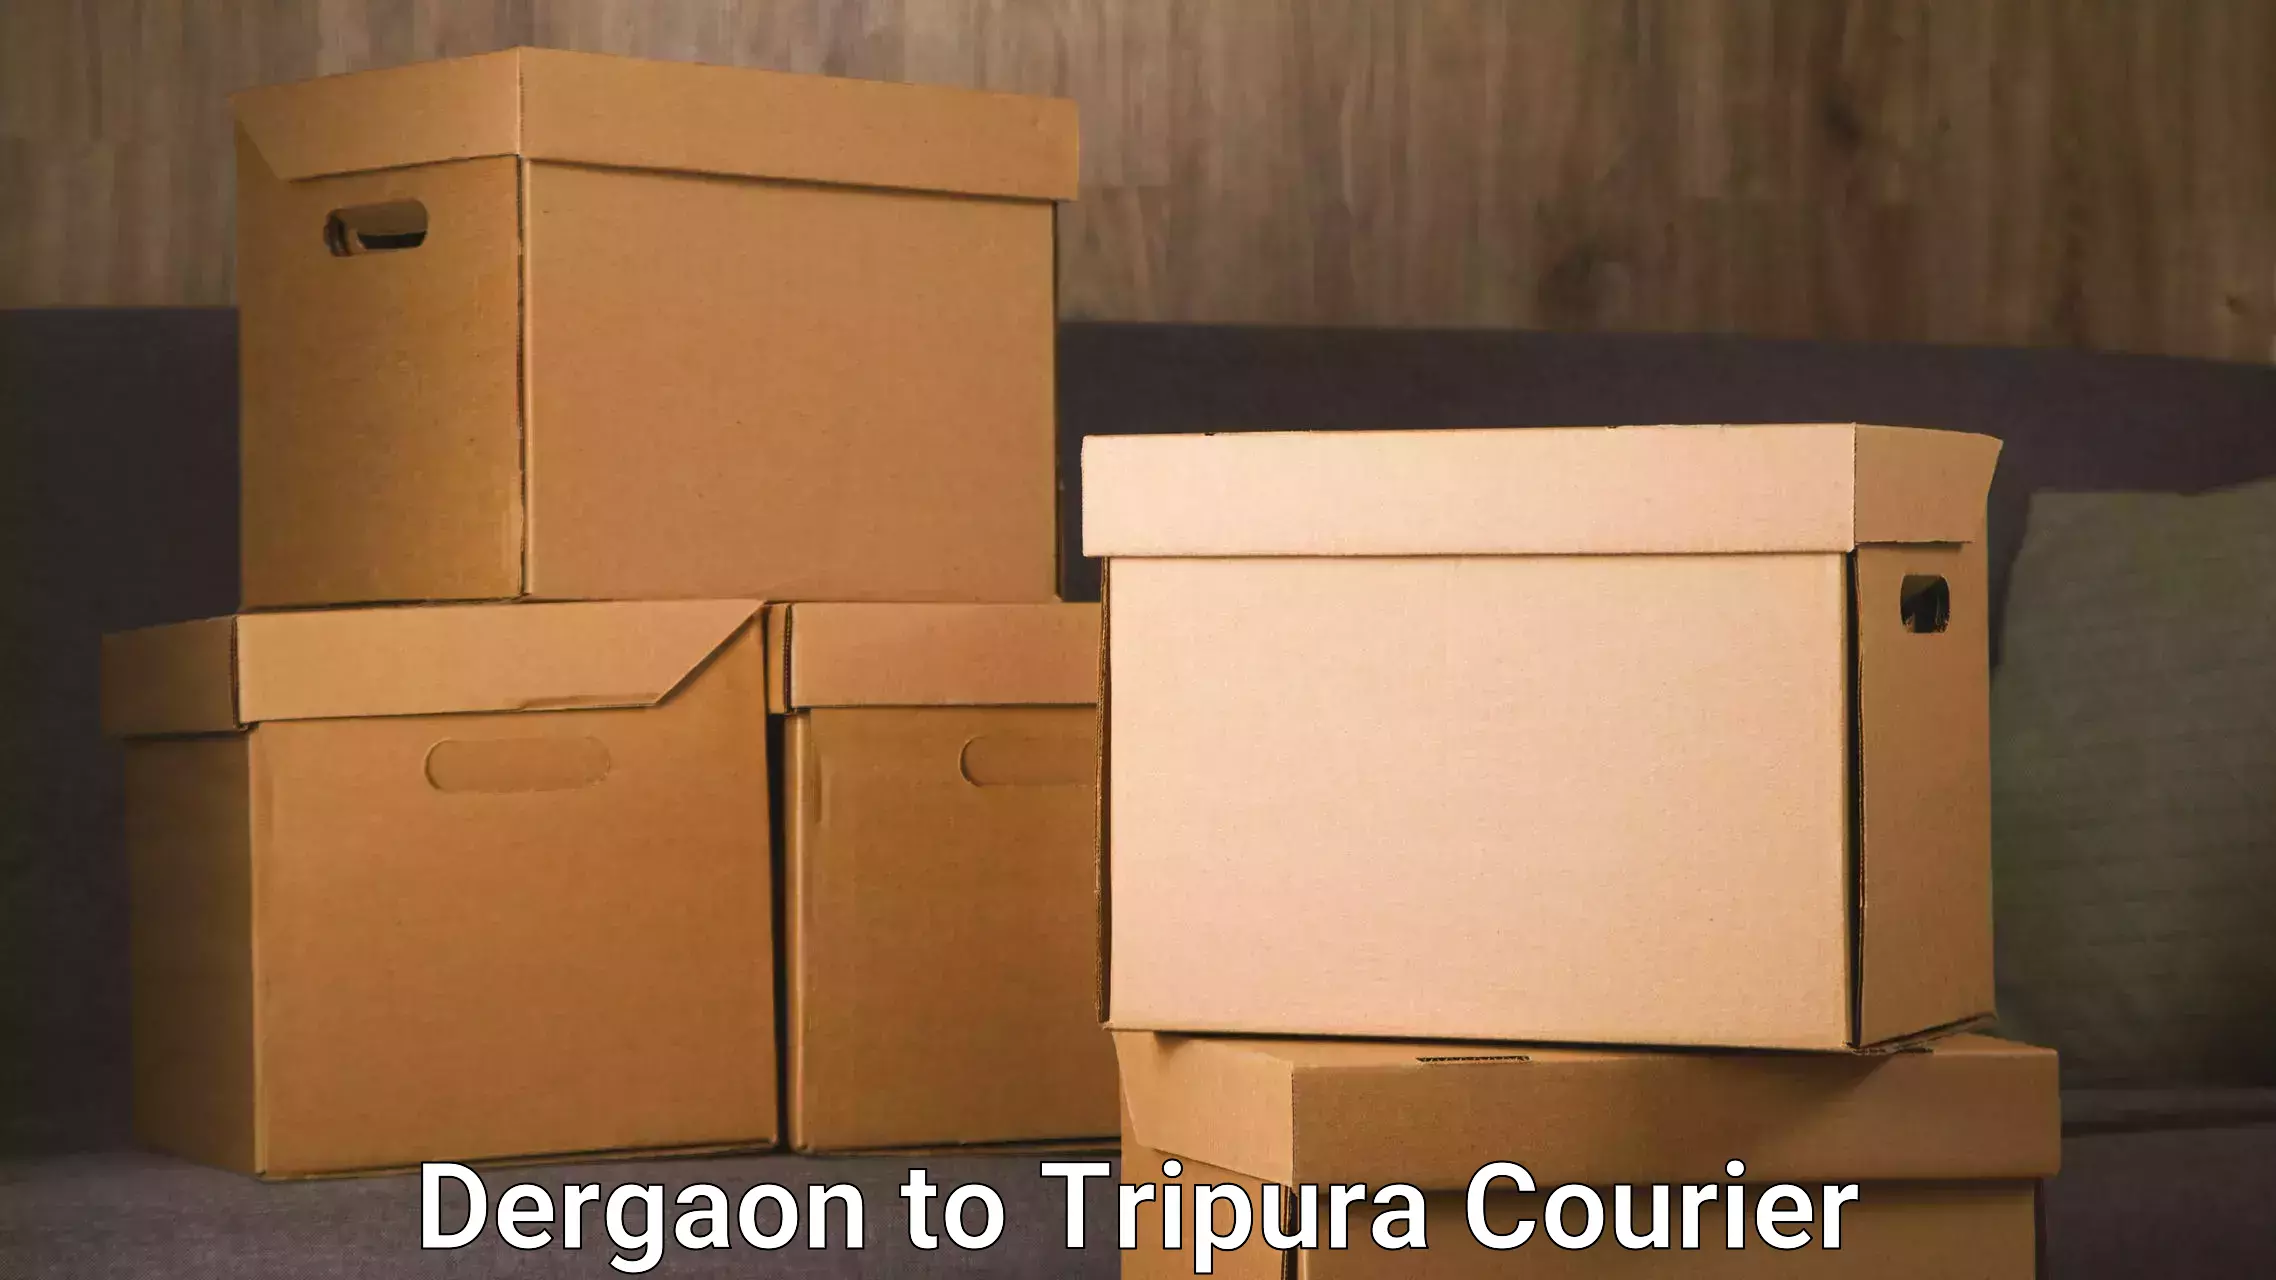 Urgent courier needs in Dergaon to Tripura